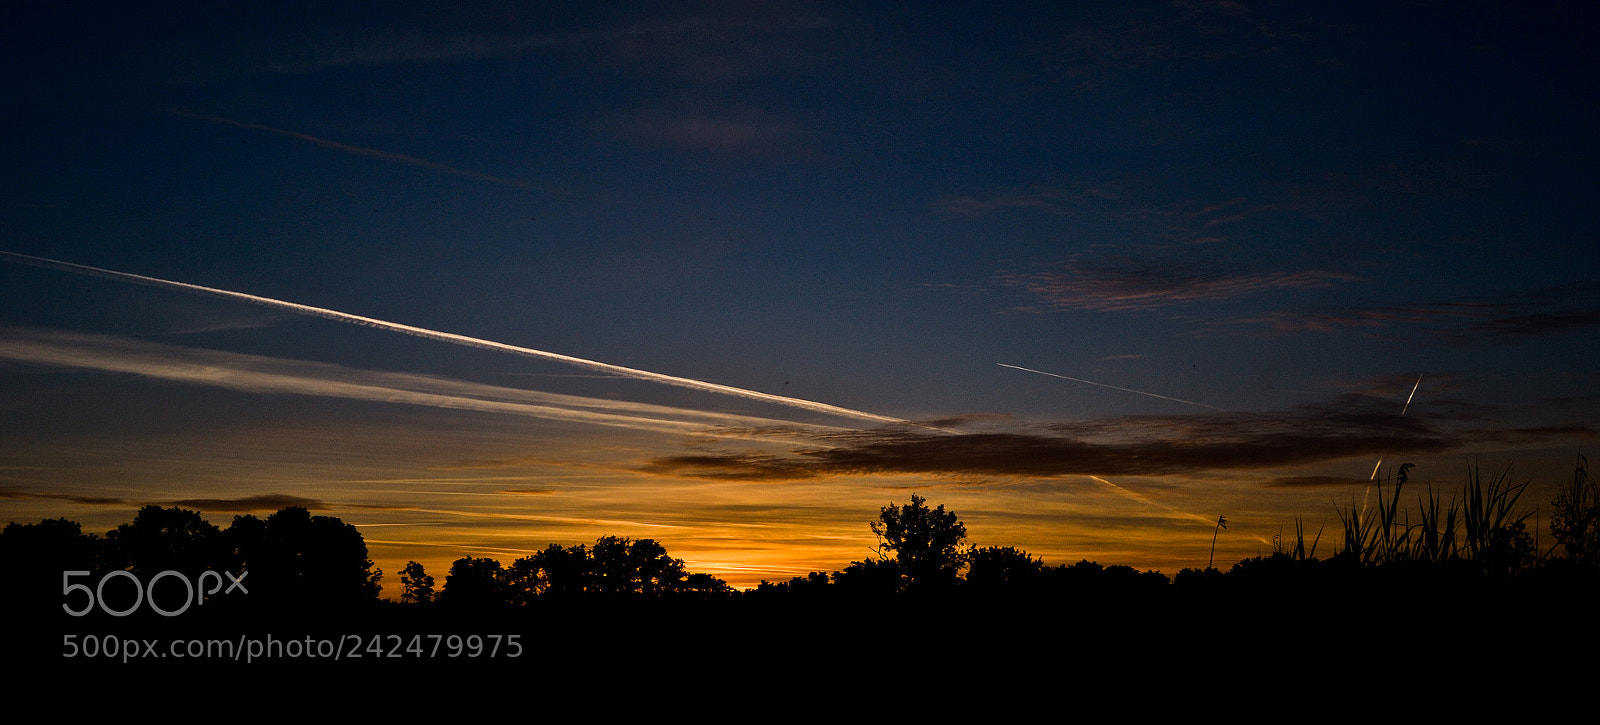 Nikon D3100 sample photo. Countryside dusk photography